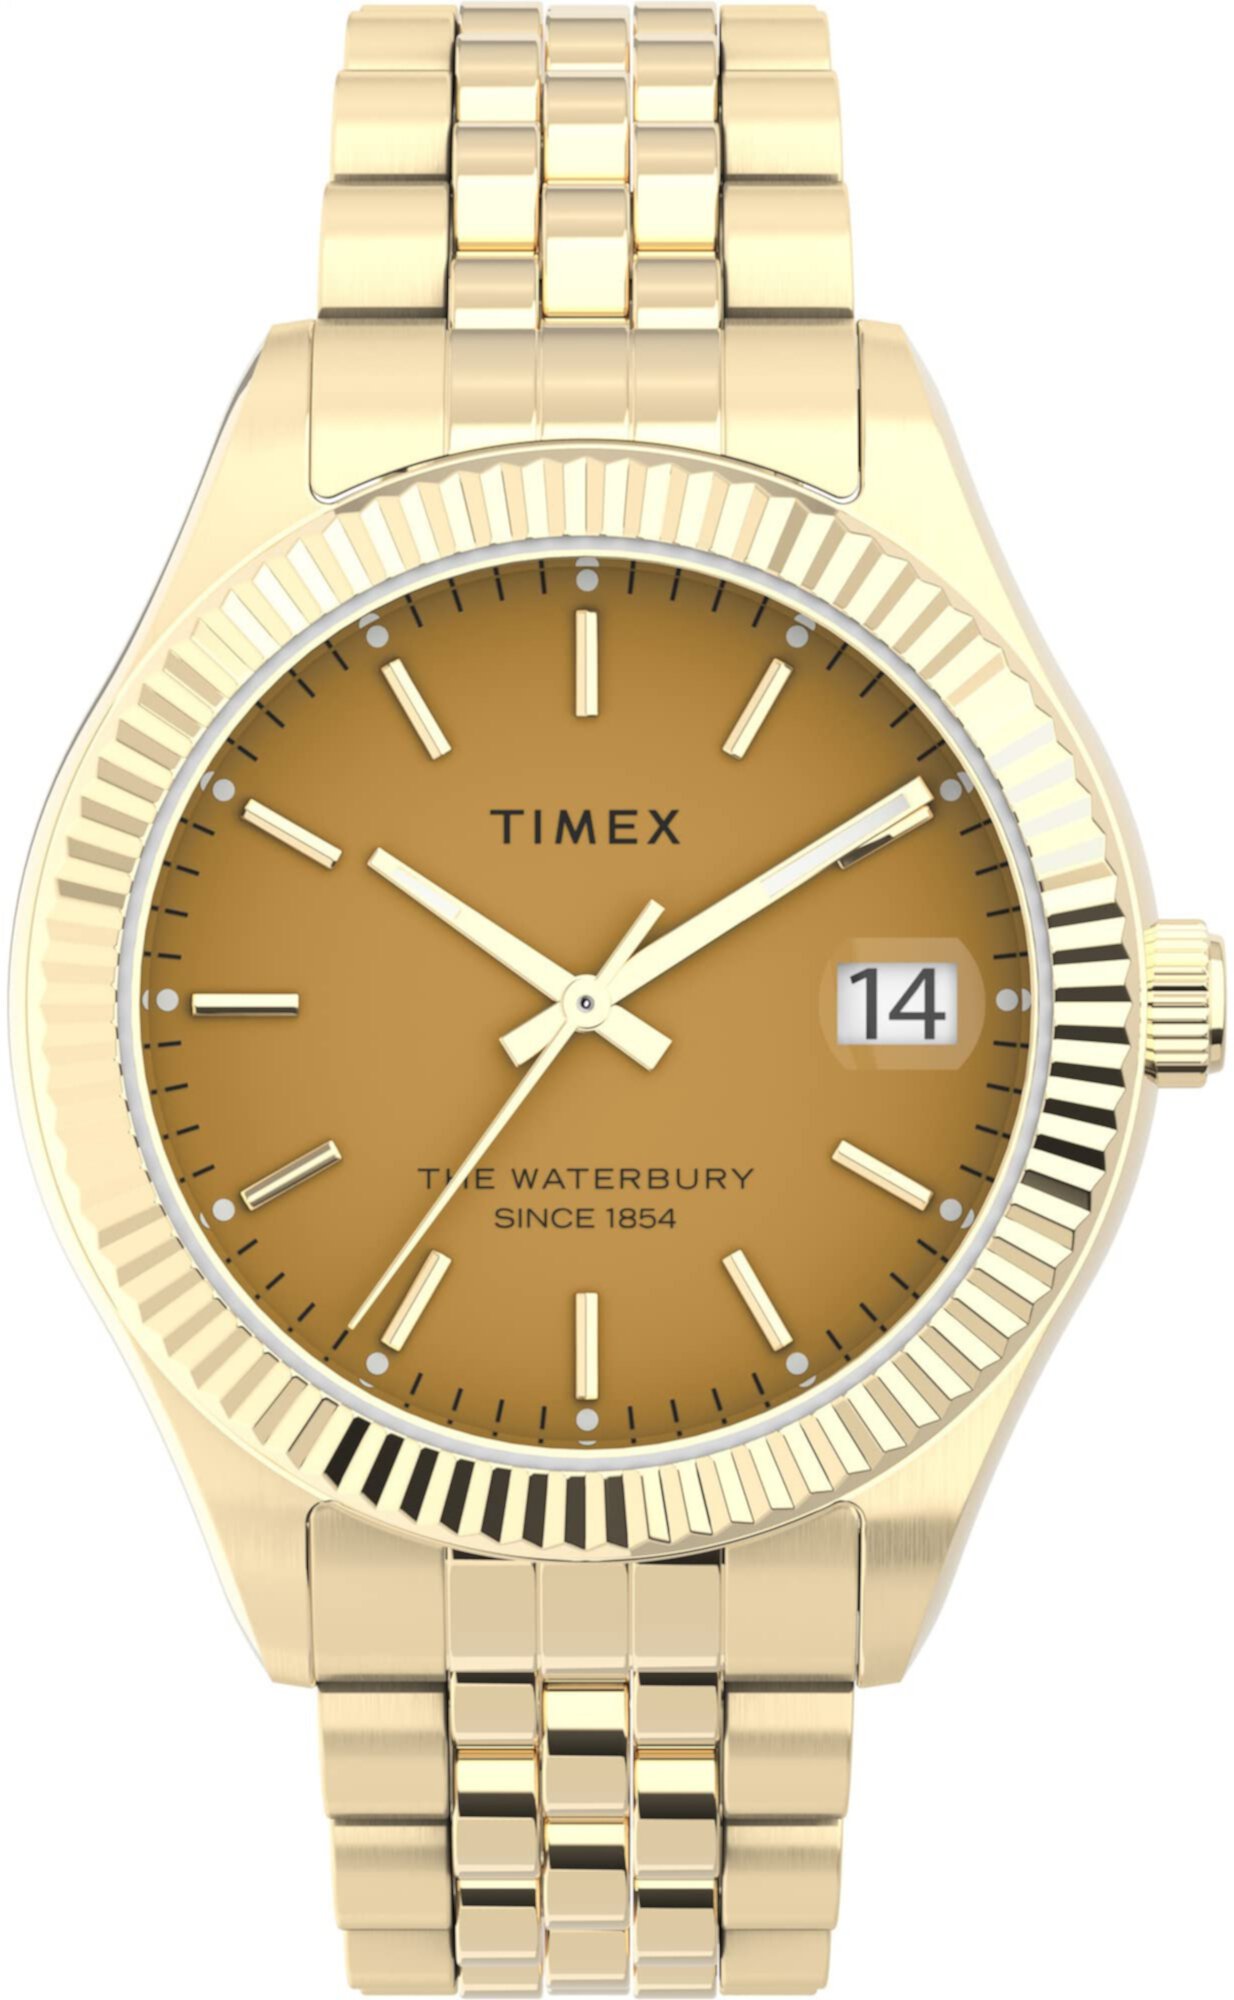 Часы-браслет Waterbury Legacy диаметром 34 мм с тремя стрелками Timex